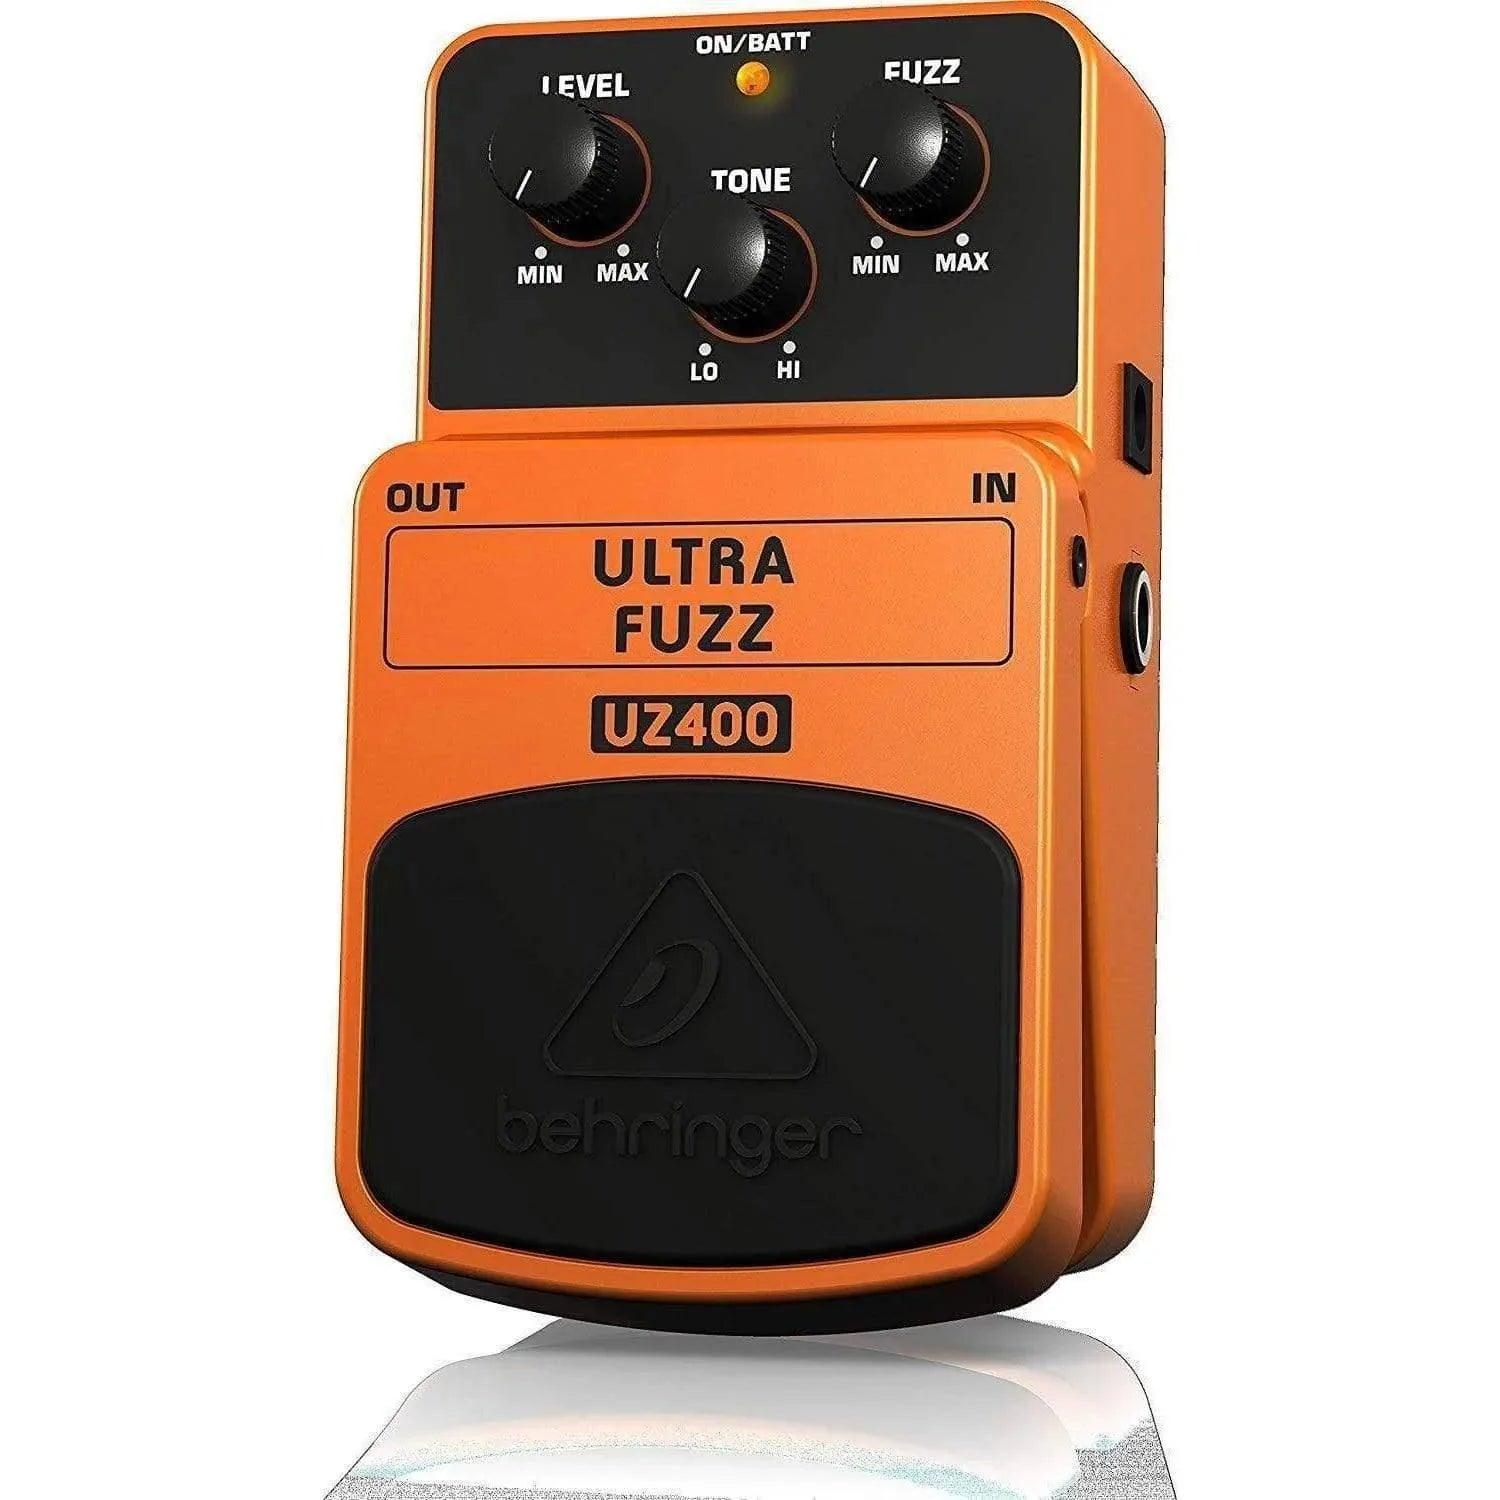 Behringer UZ400 Ultra Fuzz Distortion Guitar Effects Pedal